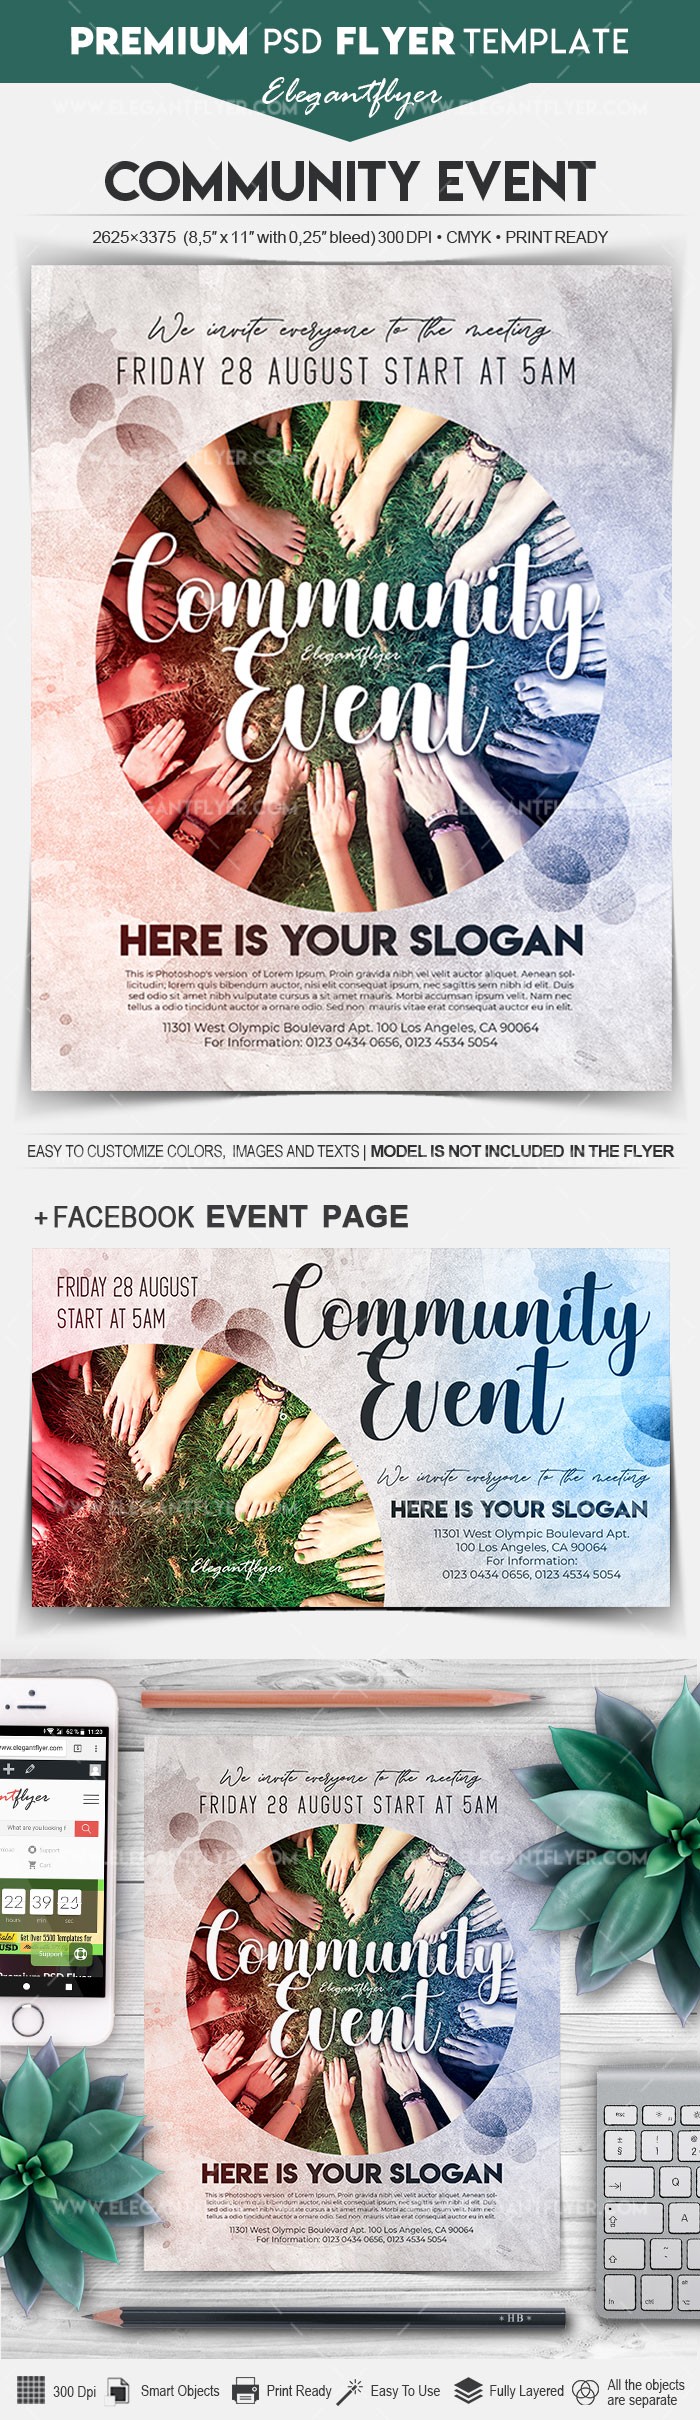 Community Event by ElegantFlyer